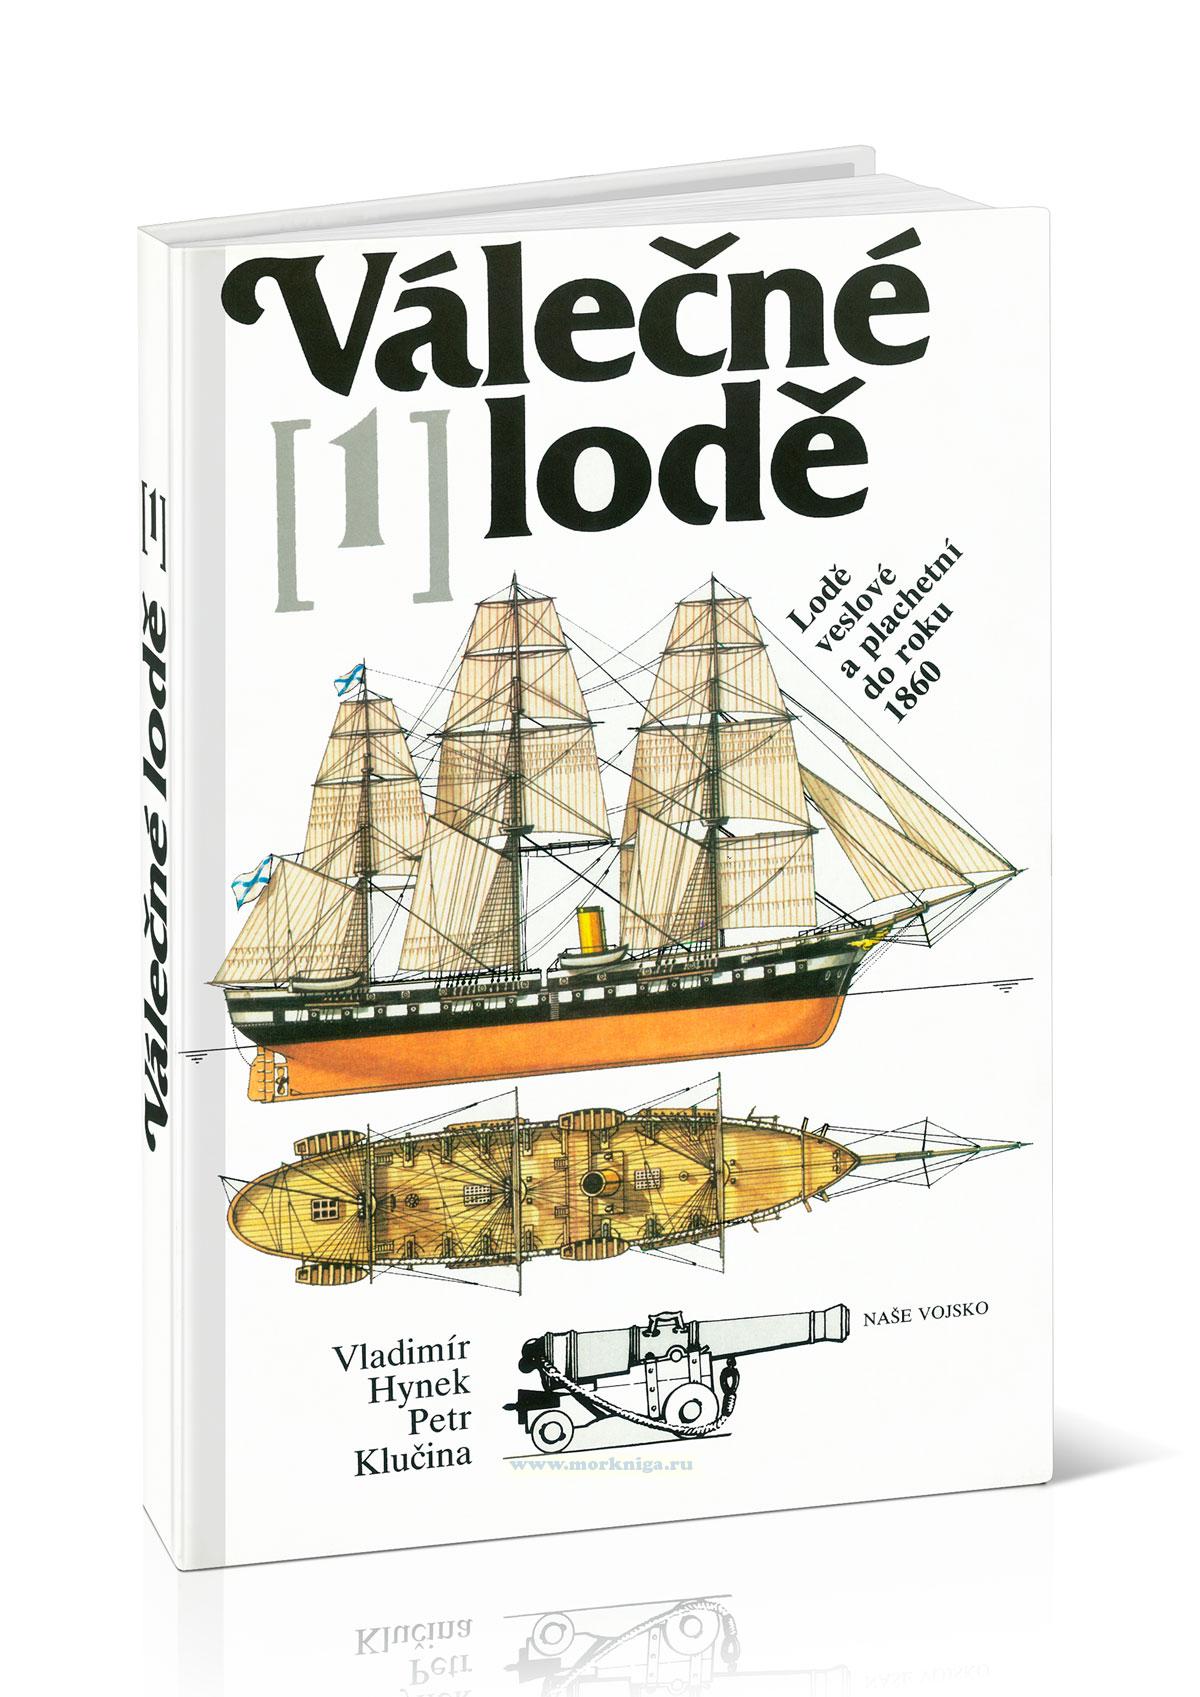 Valecne lode (1). Lode veslove a plachetni do roku 1860